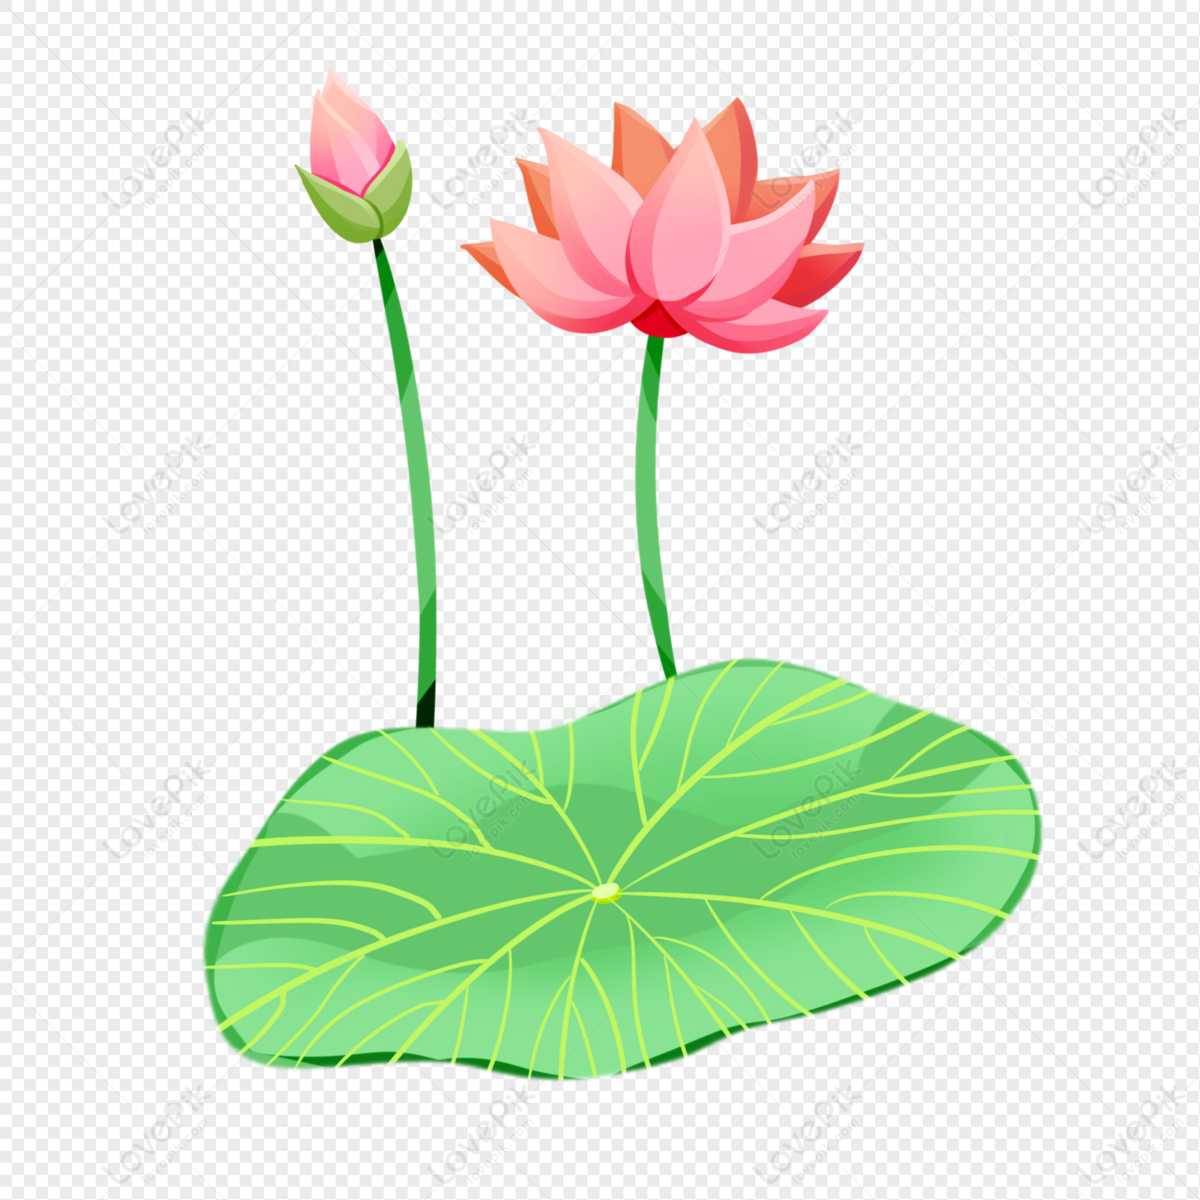 lovepik summer solstice pink lotus blossom flower bone png image 401336285 wh1200